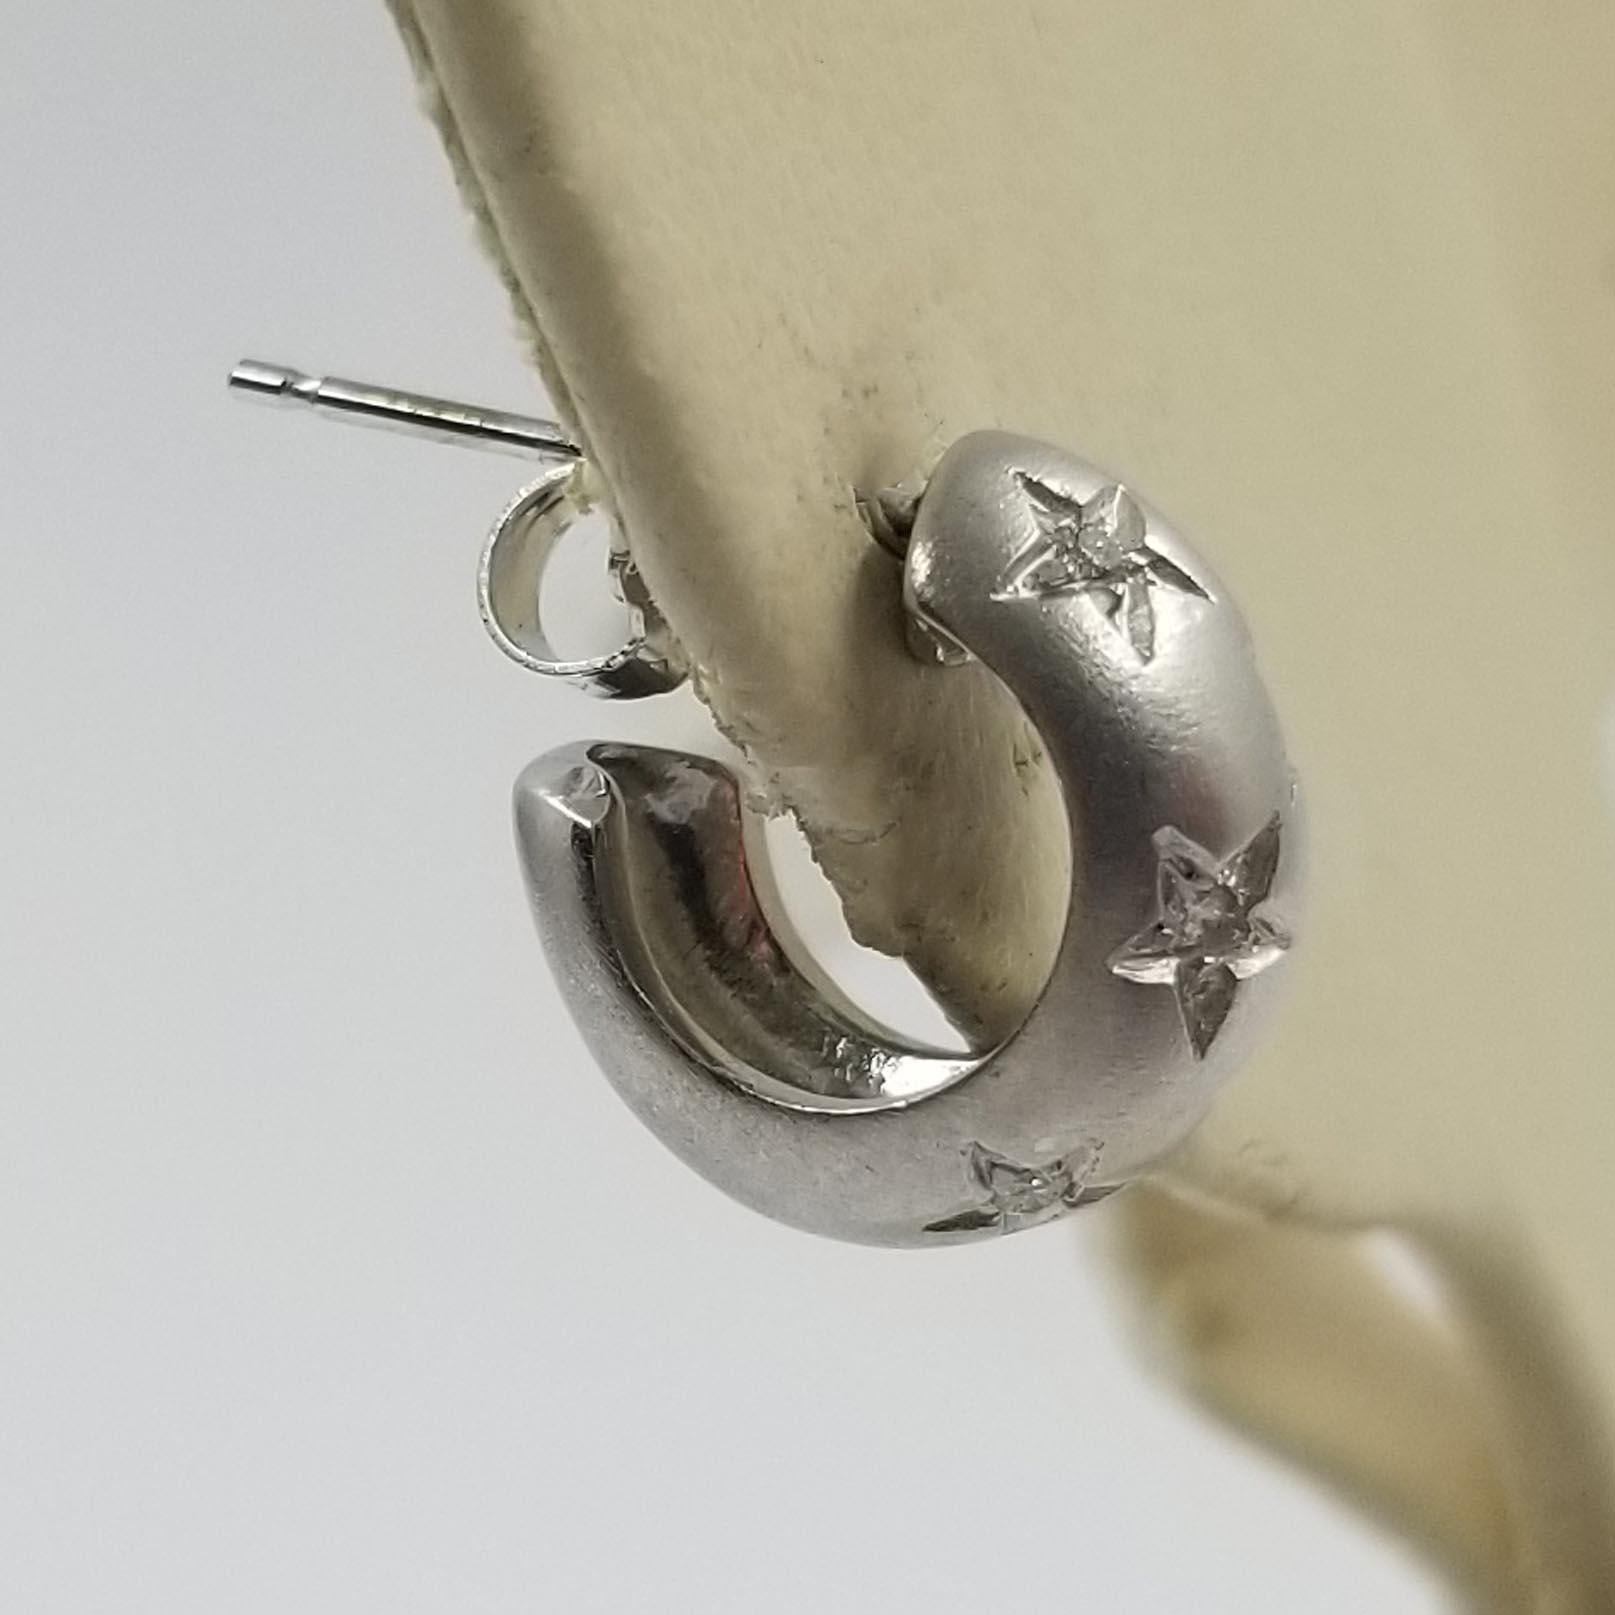 Ces boucles d'oreilles de style huggie sont fabriquées en or blanc 18 carats avec une finition mate. Elles comportent 10 diamants ronds d'un poids total d'environ 0,05 carat. L'intérieur de chaque cerceau est estampillé 750. Les dos des boucles